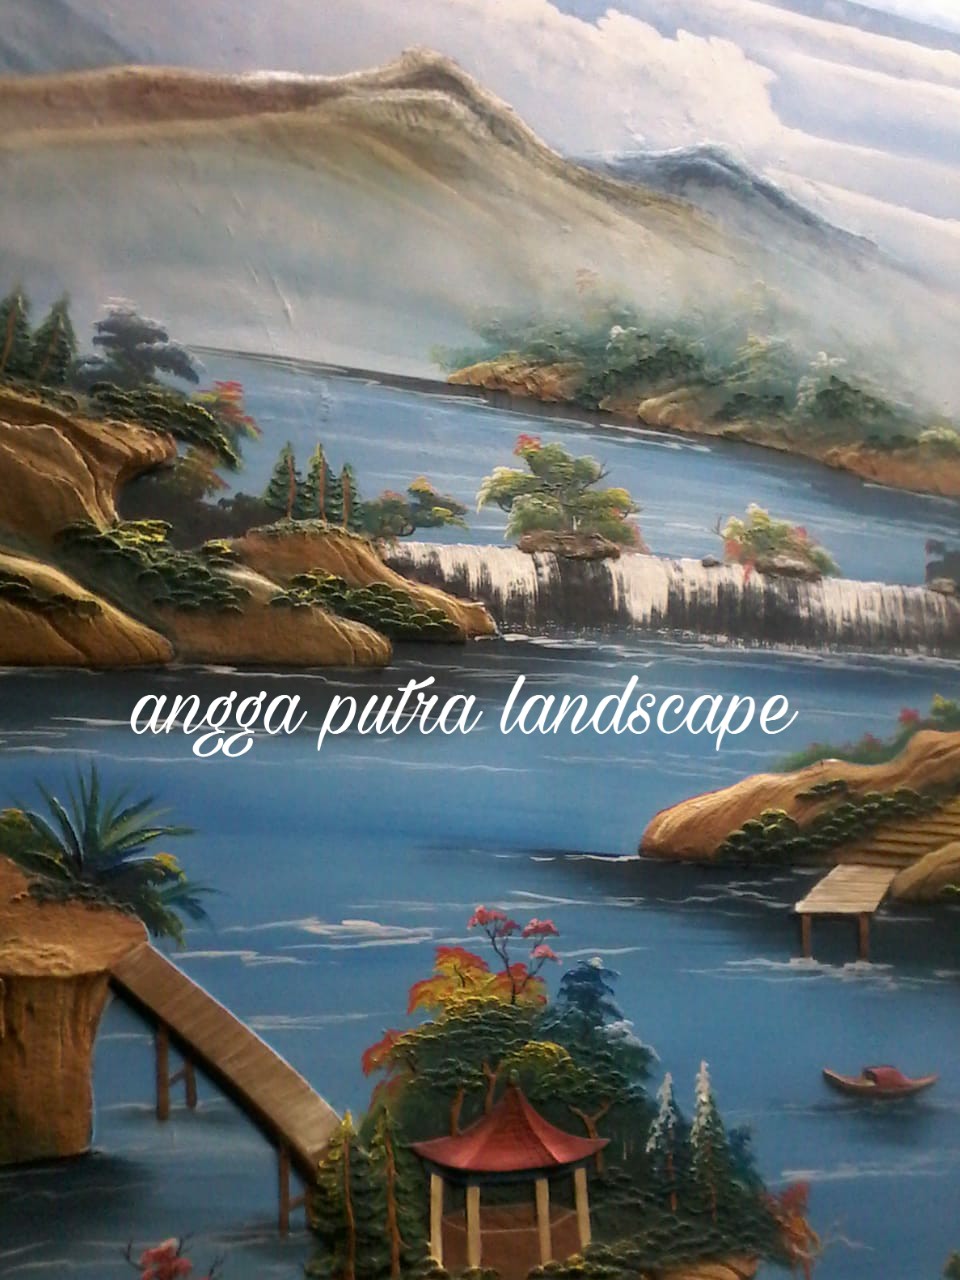 Jasa pembuatan dekorasi kolam tebing,dekorasi relief air terjun bojonegoro